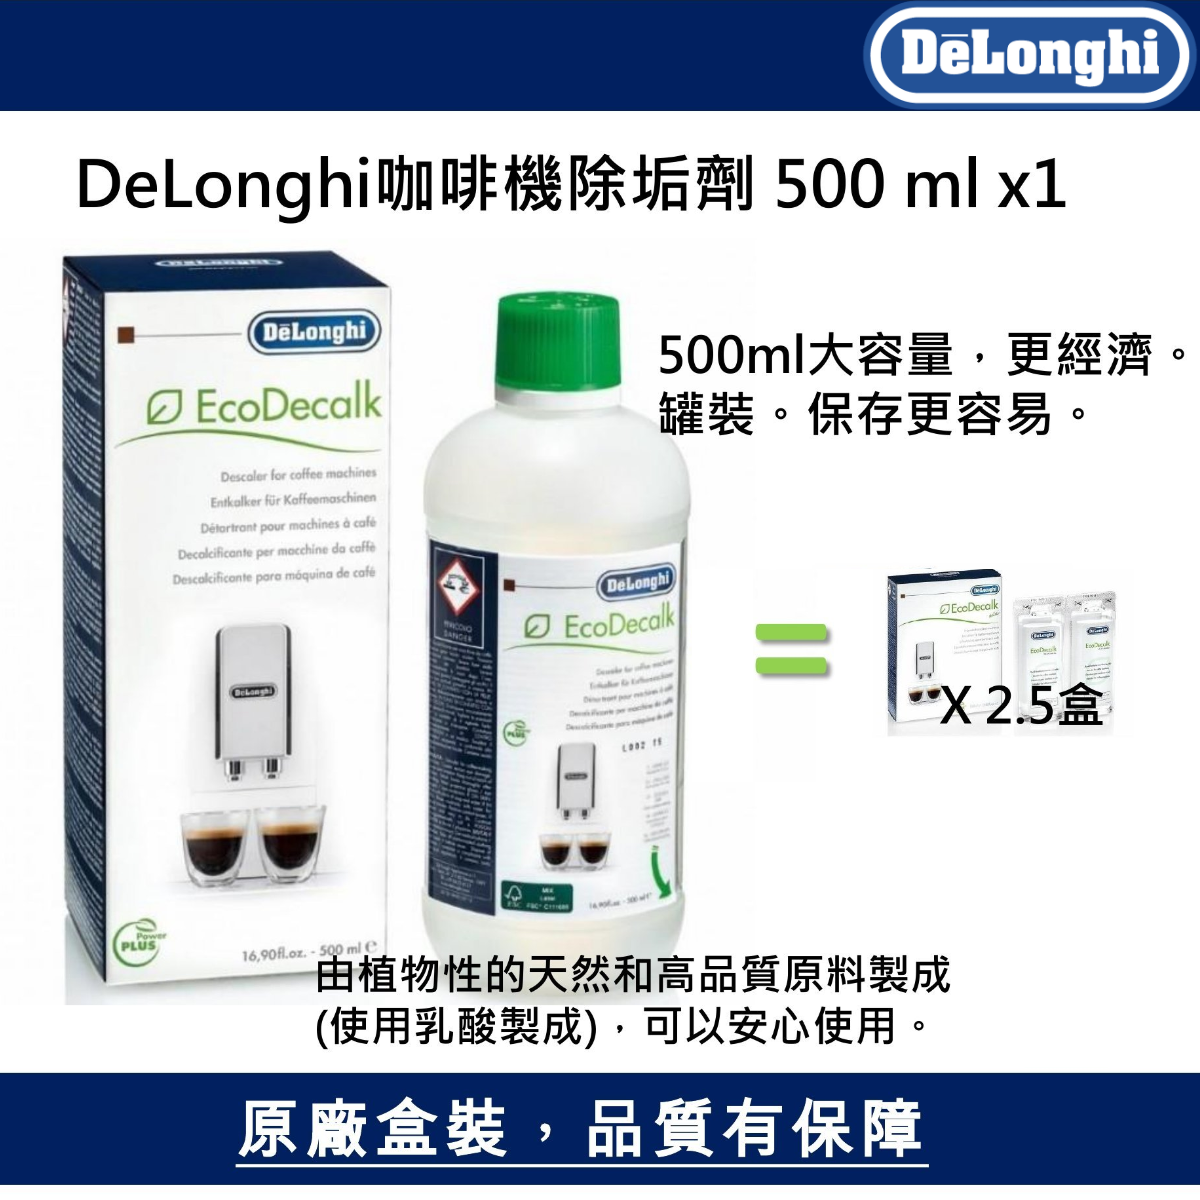 3 x DeLonghi EcoDecalk 500 ml DLSC500